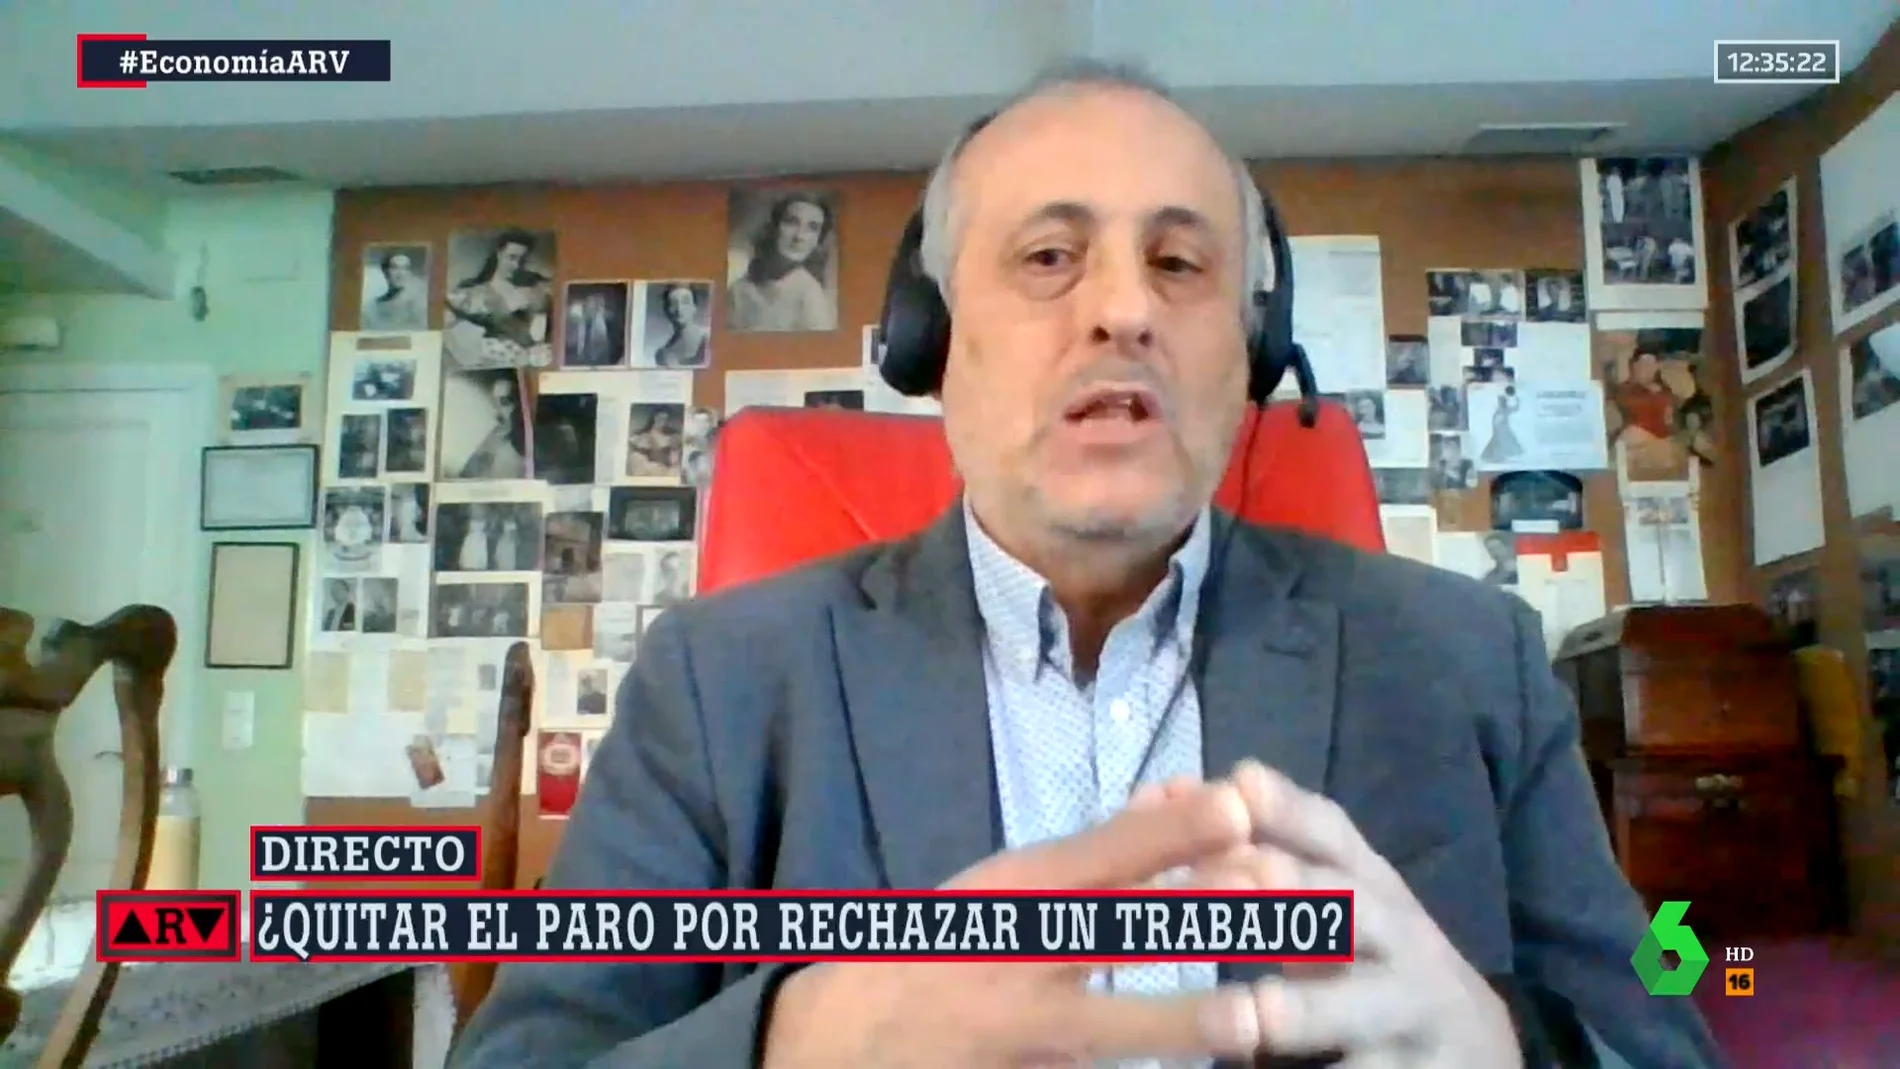 Alejandro Inurrieta, en contra de retirar el paro a quien rechace un empleo: "Hay que ser respetuoso con quienes necesitan salarios dignos"